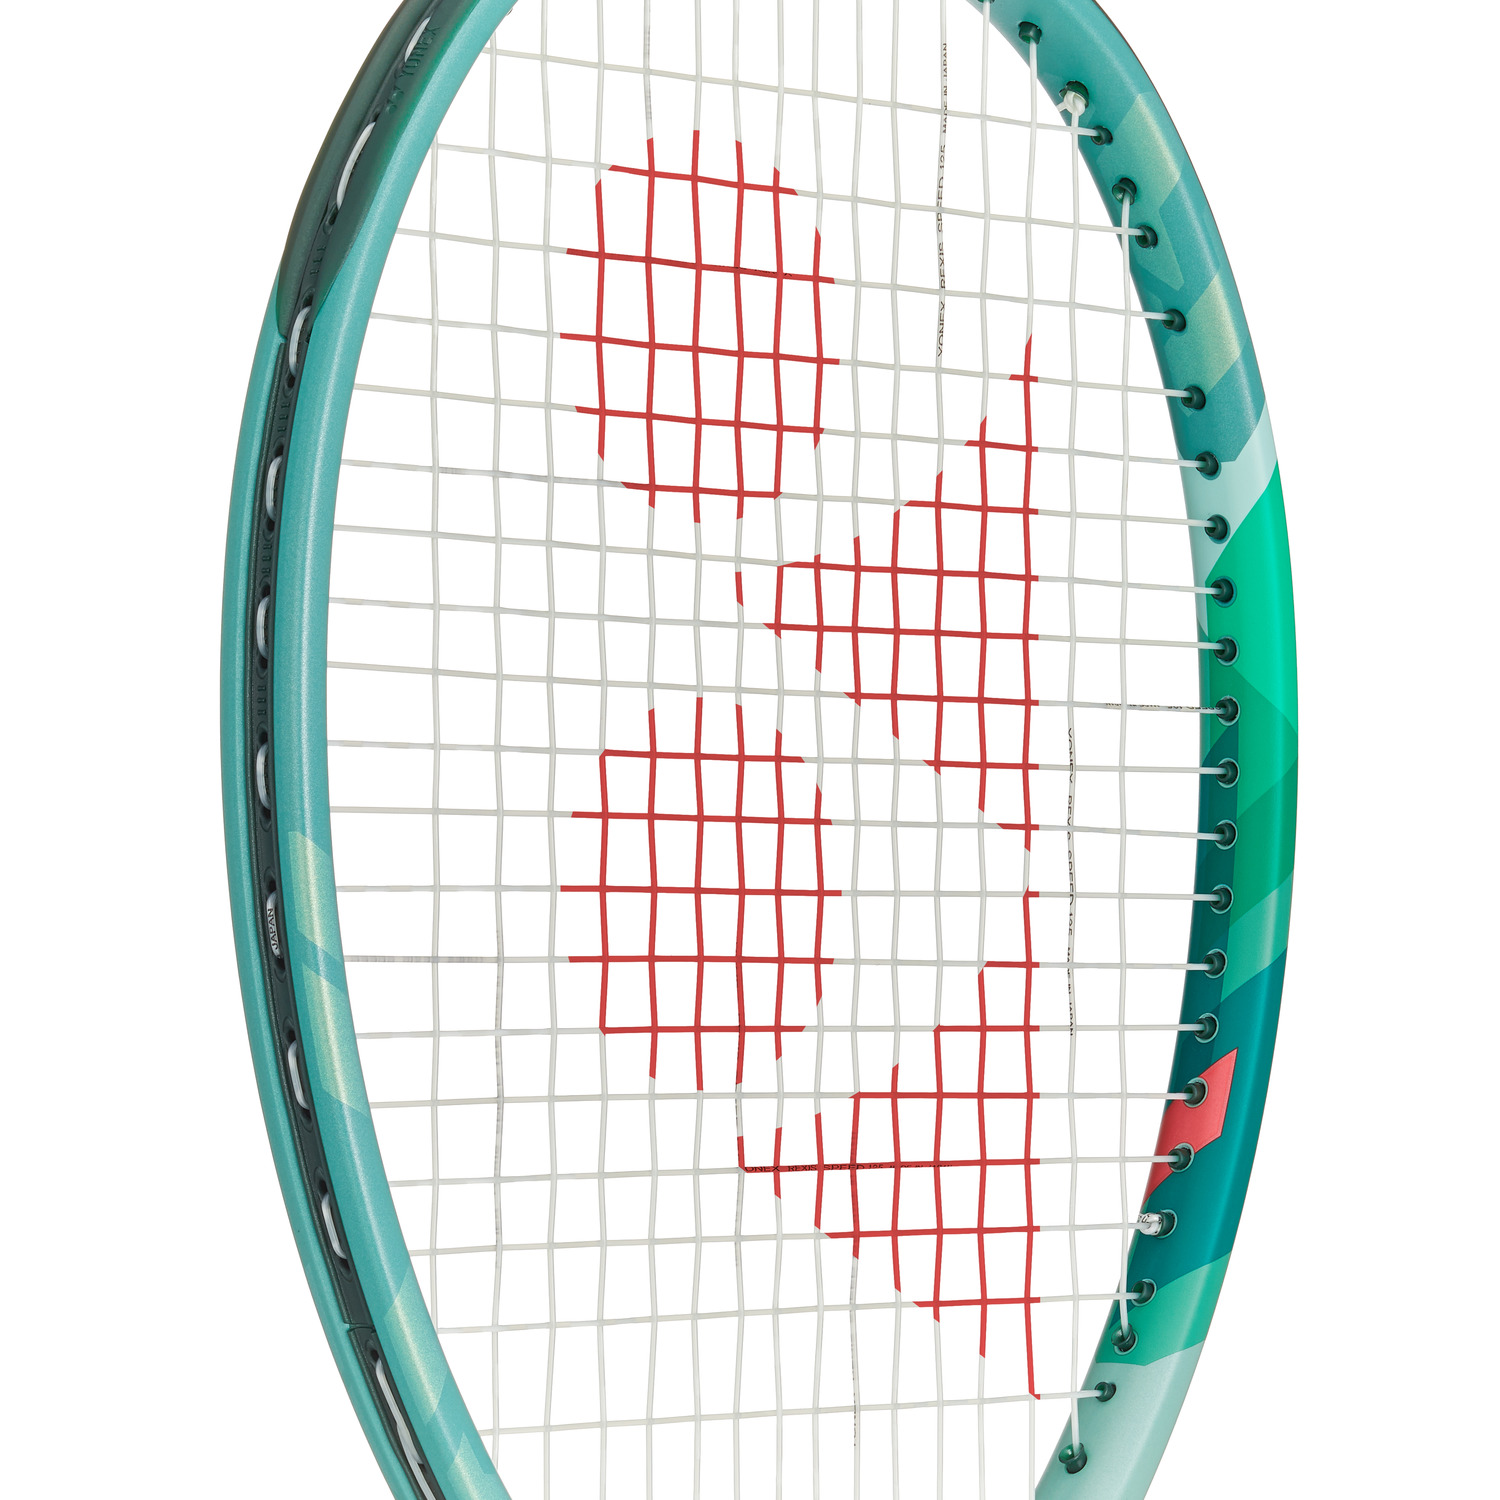 バランス…310mm再値下げ【国内正規品 保証内】YONEX テニスラケット パーセプト 97 G3